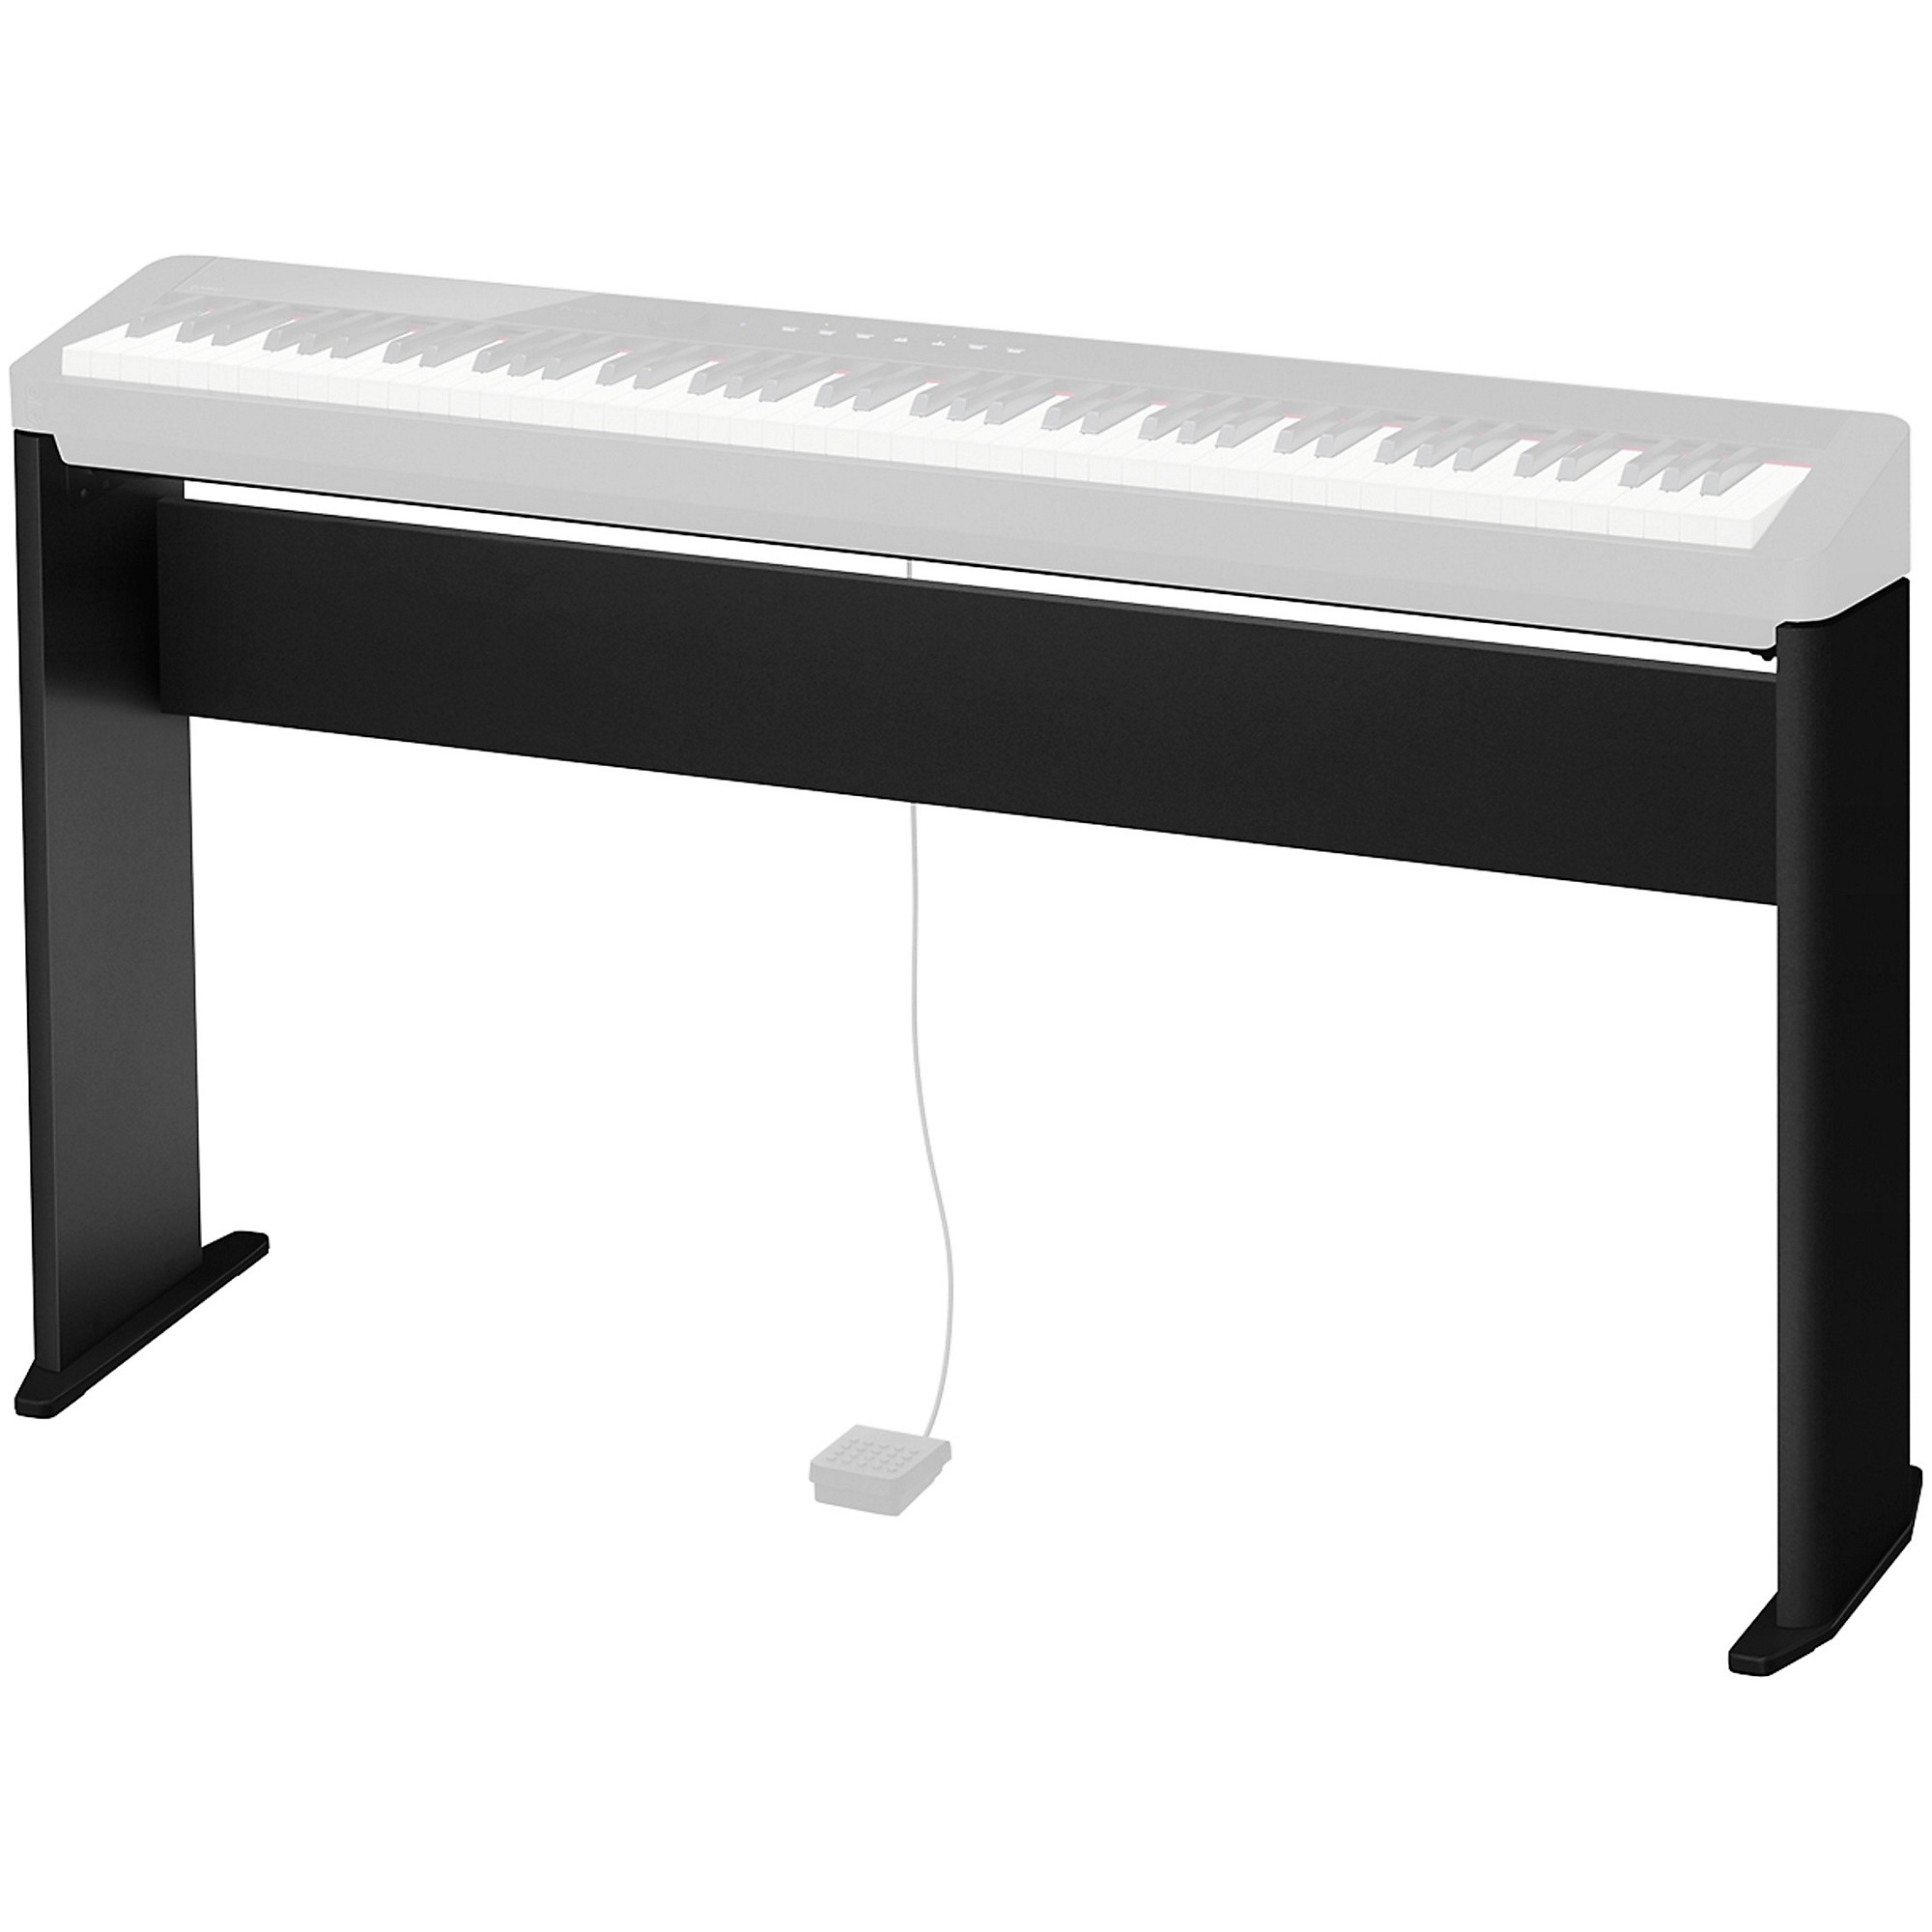 Achat/Vente Claviers - Pianos numériques CASIO Piano numérique PX-S1100WE  88 touches - Rockstation